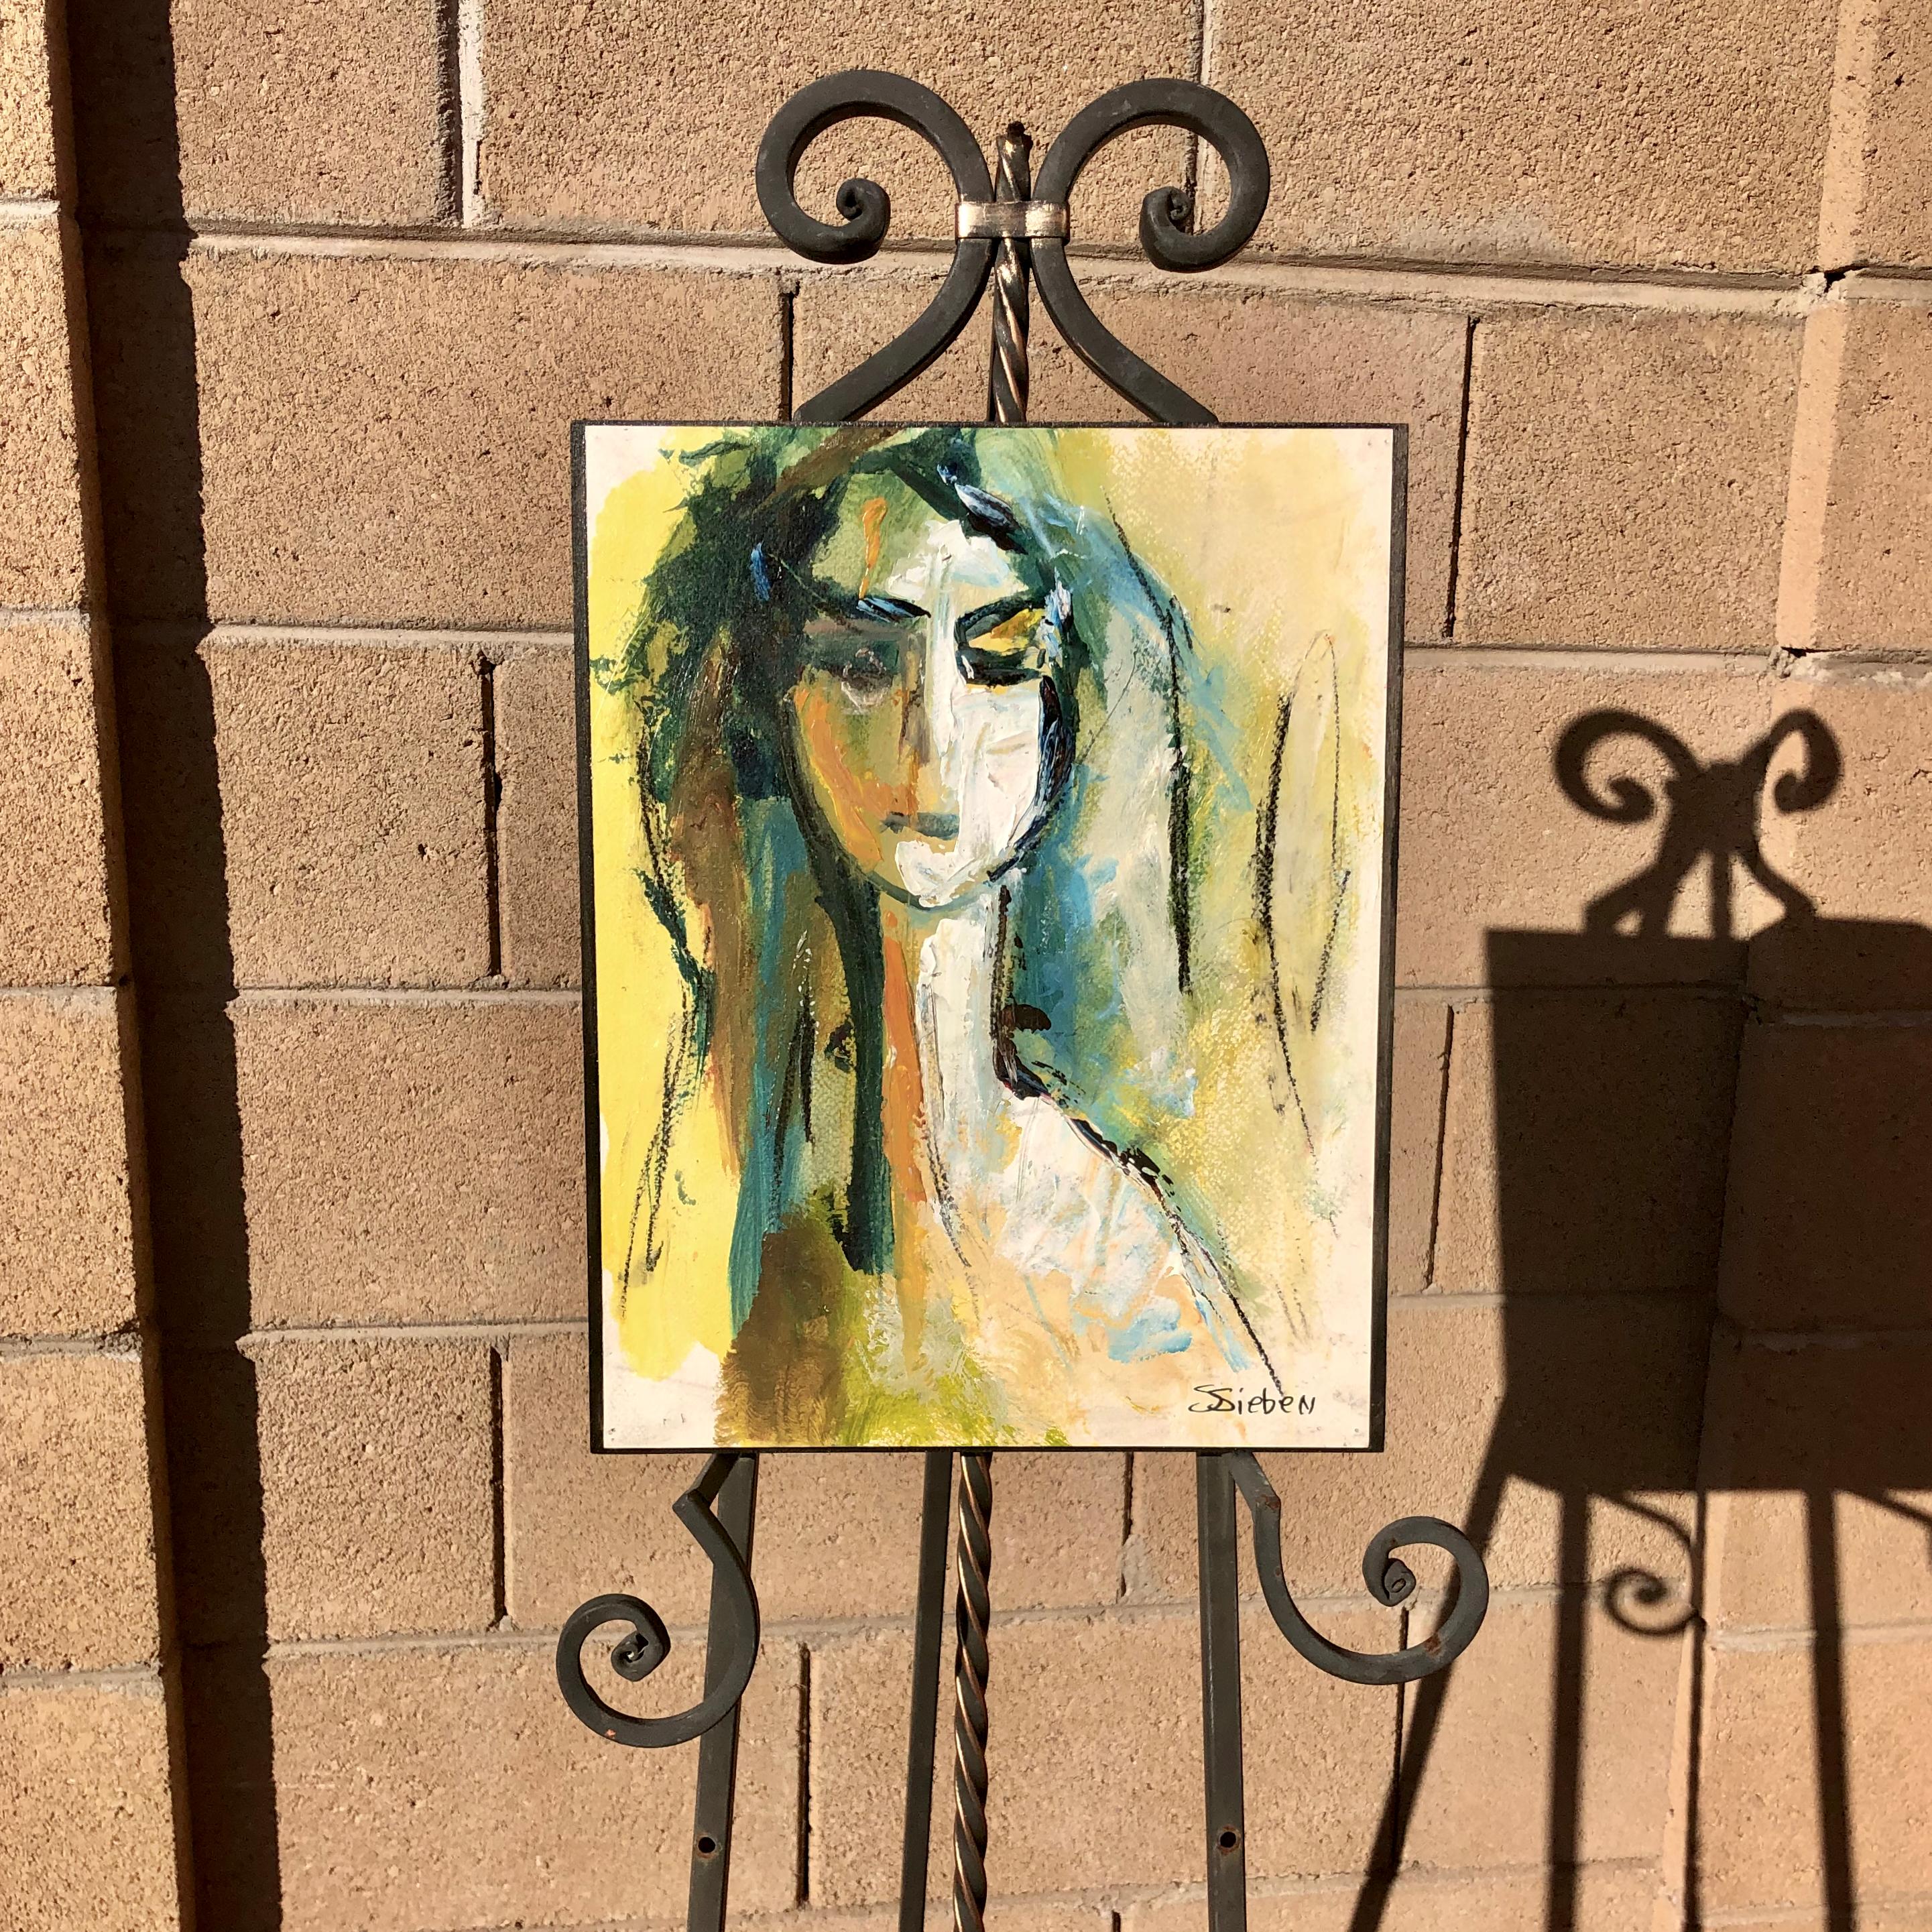 <p>Kommentare des Künstlers<br>Dieses Gemälde zeigt eine Frau mit einem zweideutigen Ausdruck, der dem Werk eine geheimnisvolle Stimmung verleiht. Die blauen Strähnen in ihrem Haar und der Schatten auf ihrem Gesicht bilden einen visuellen Kontrast